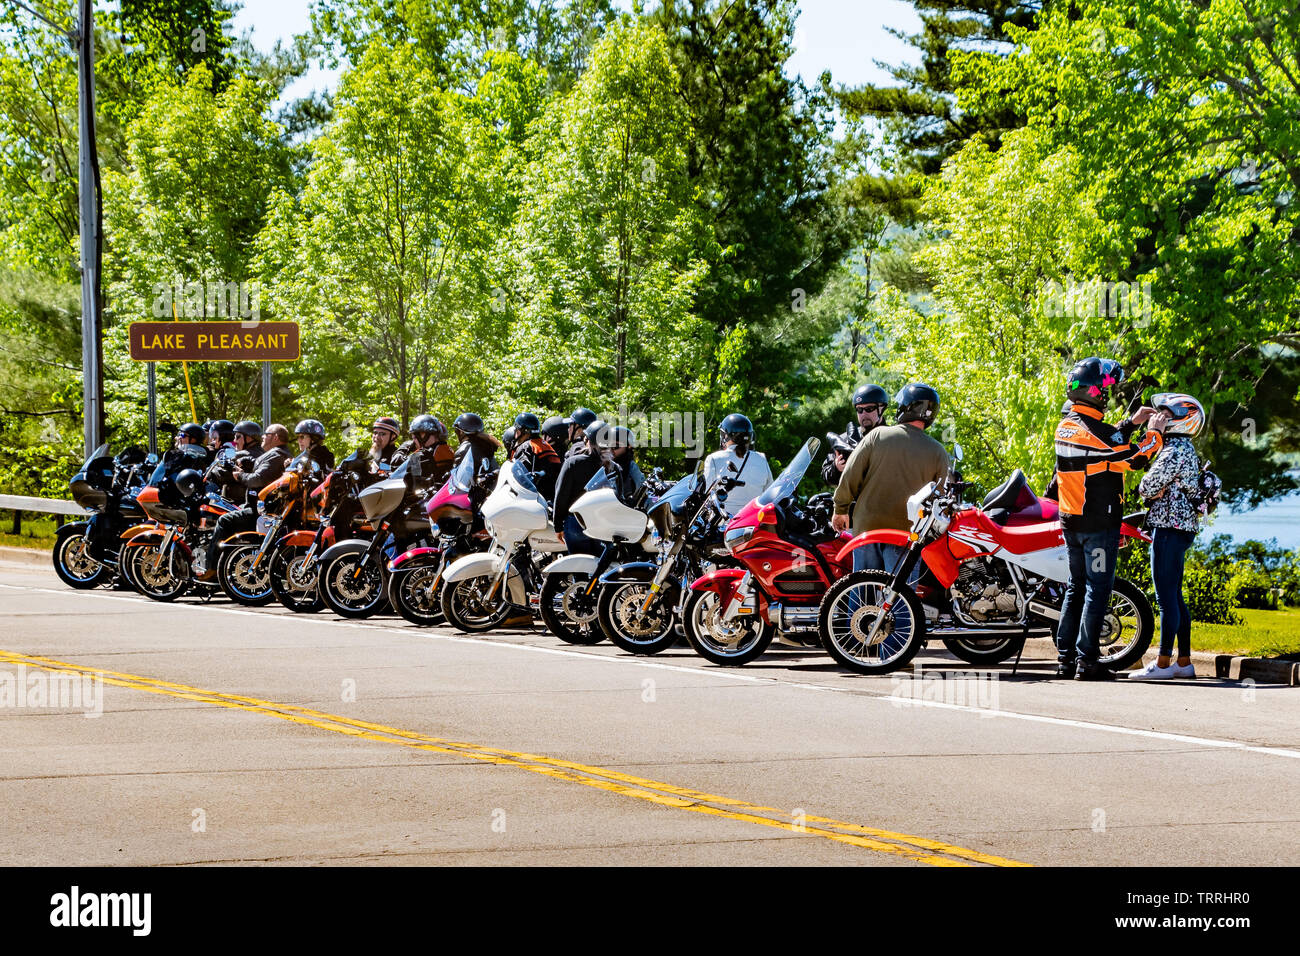 Eine große Gruppe von Motorräder und Fahrer auf der Straße am See angenehm geparkt in den Adirondack Mountains auf einer Tour während Americade 2019. Stockfoto